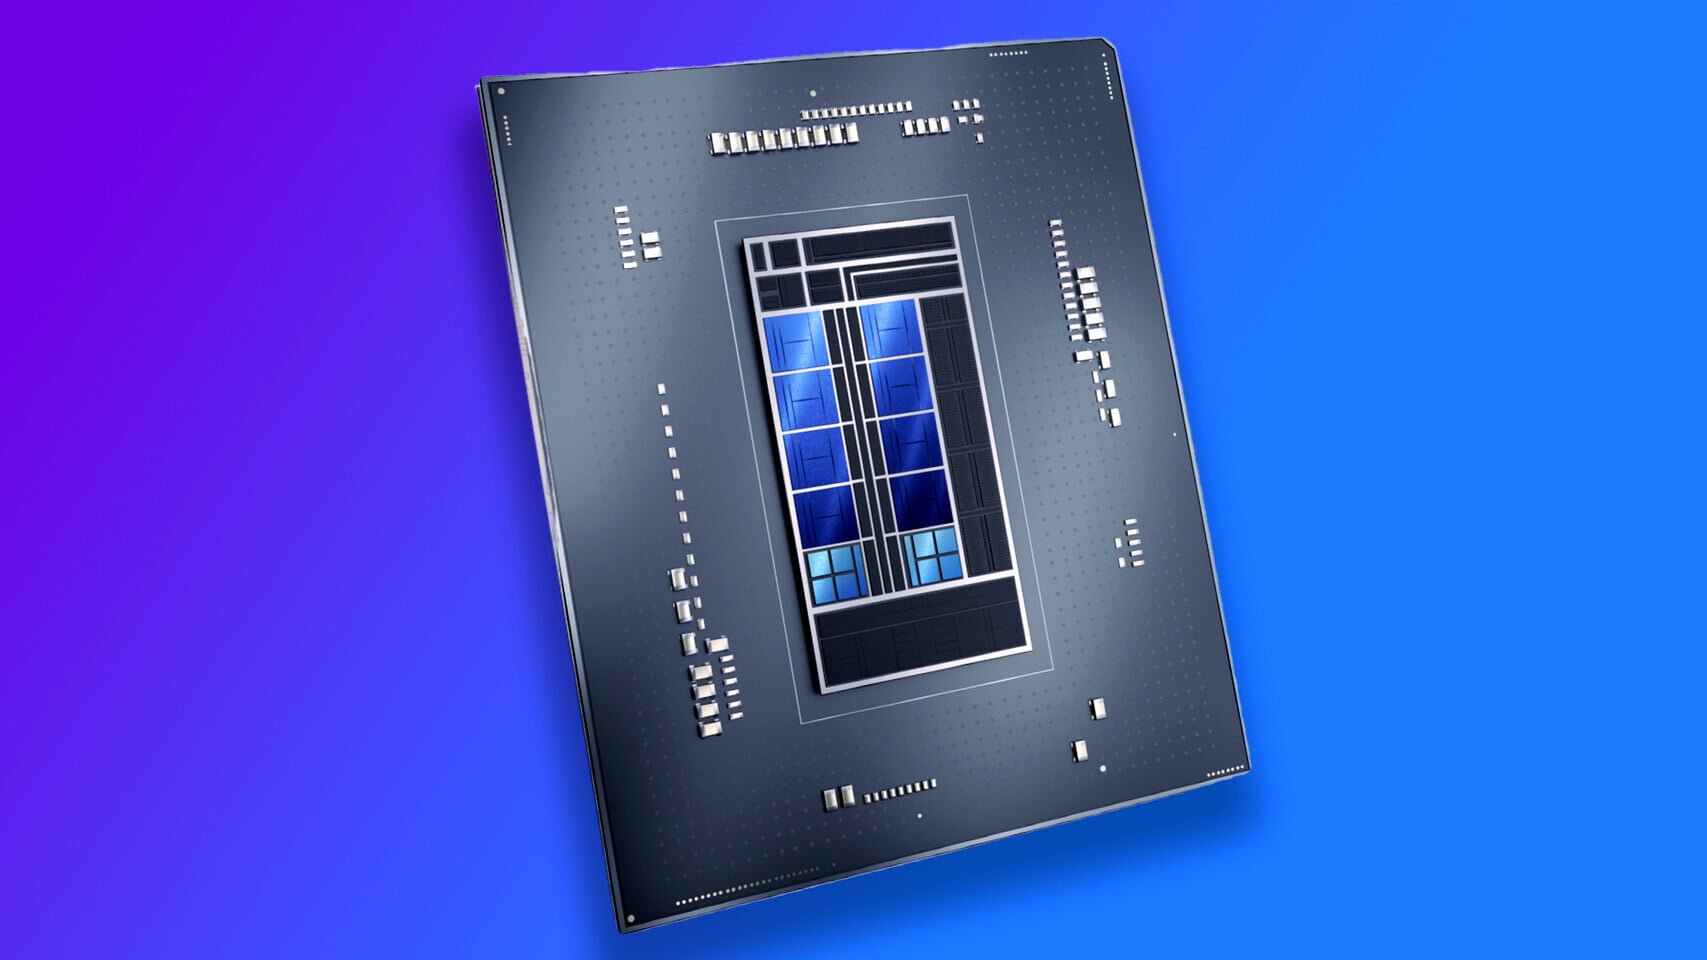 Lộ giá dòng vi xử lý Intel Alder Lake, i9-12900K giá 13.8 triệu đồng - Image 1